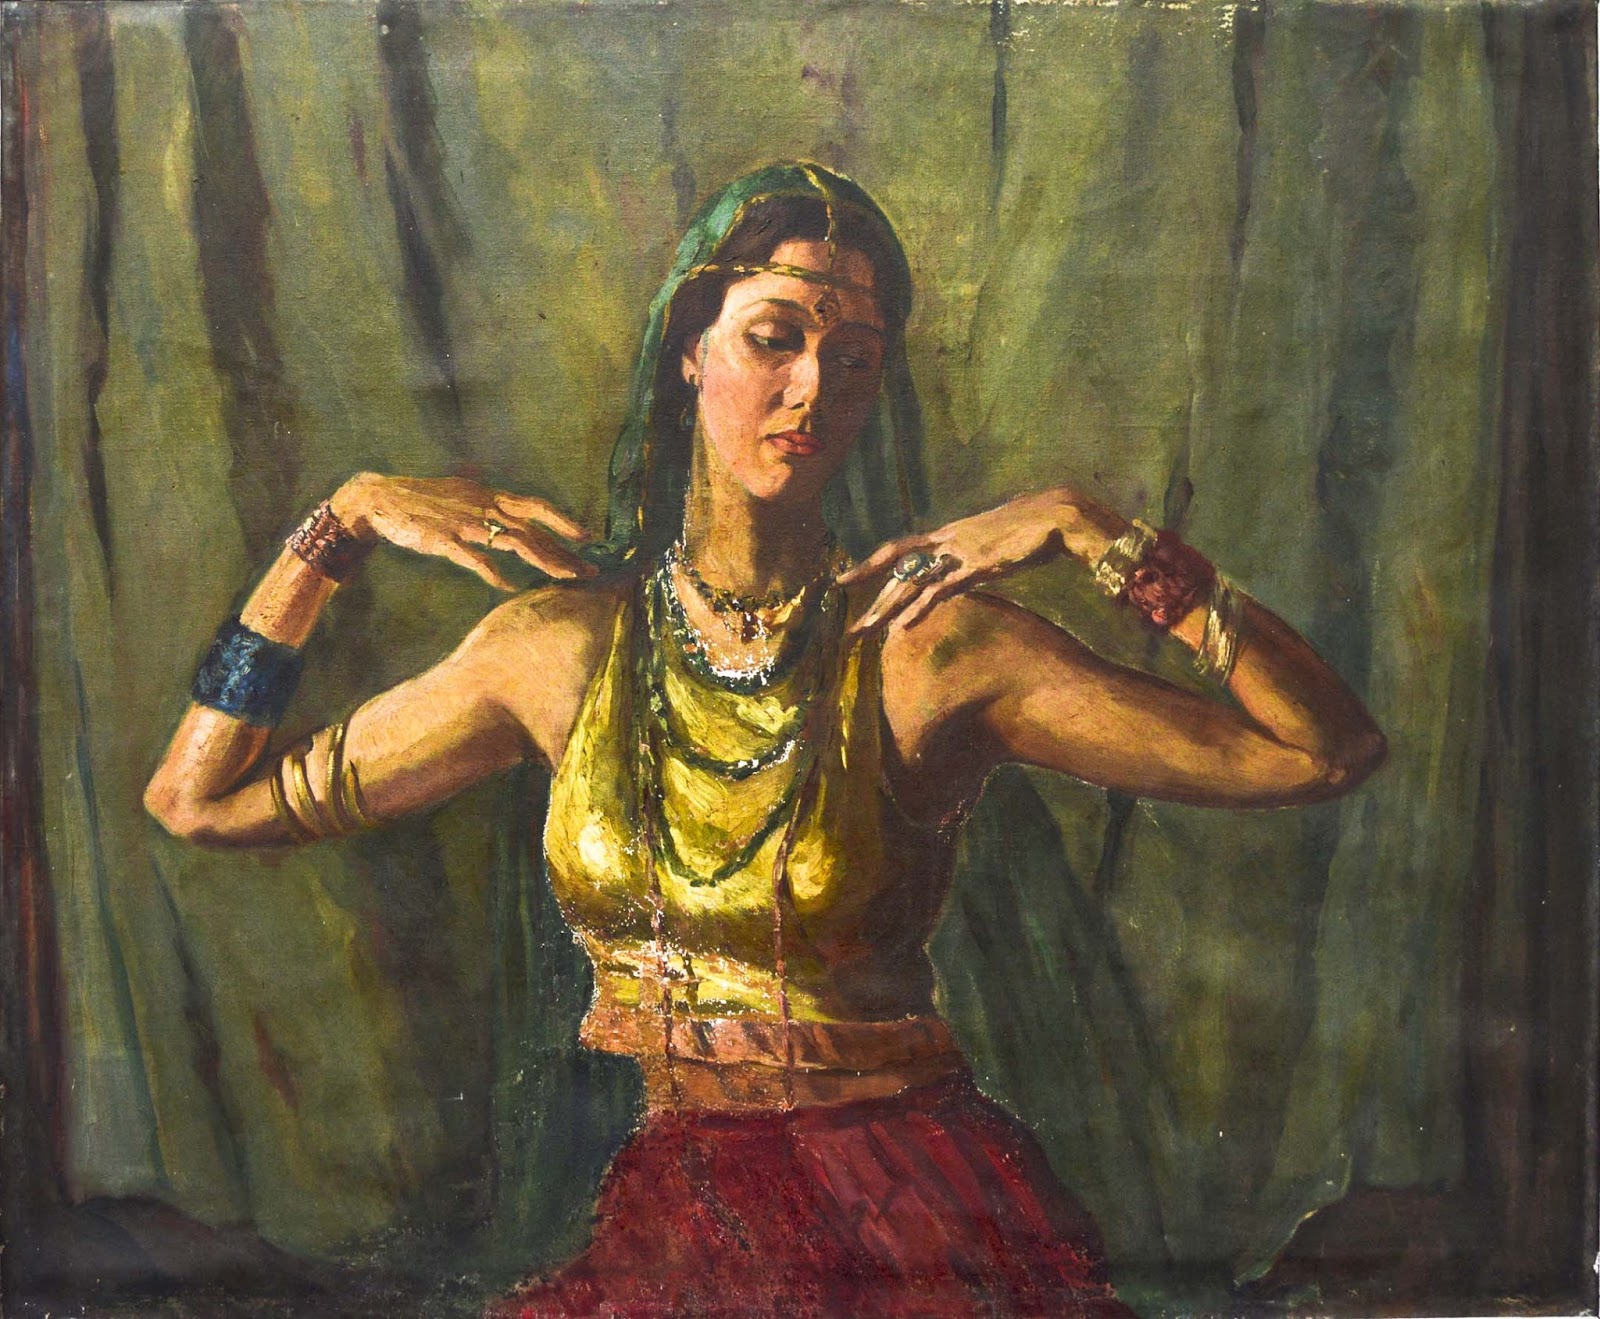 Amarasekera-The Dancer offstage